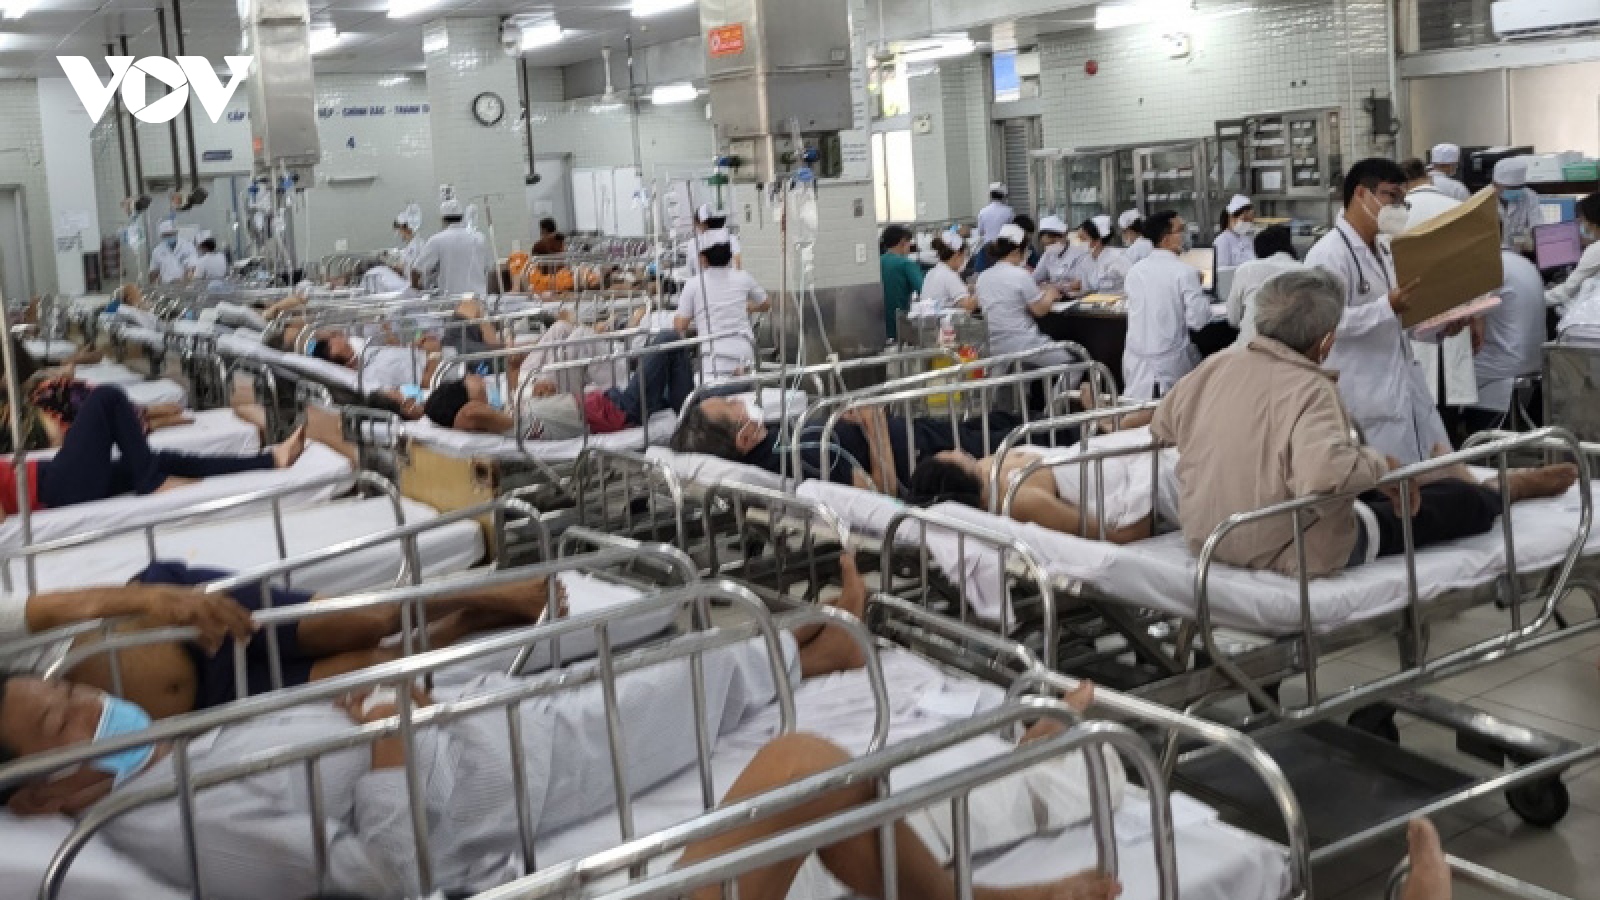 Ca bệnh cấp cứu tại Bệnh viện Chợ Rẫy tăng vọt sau kỳ nghỉ lễ